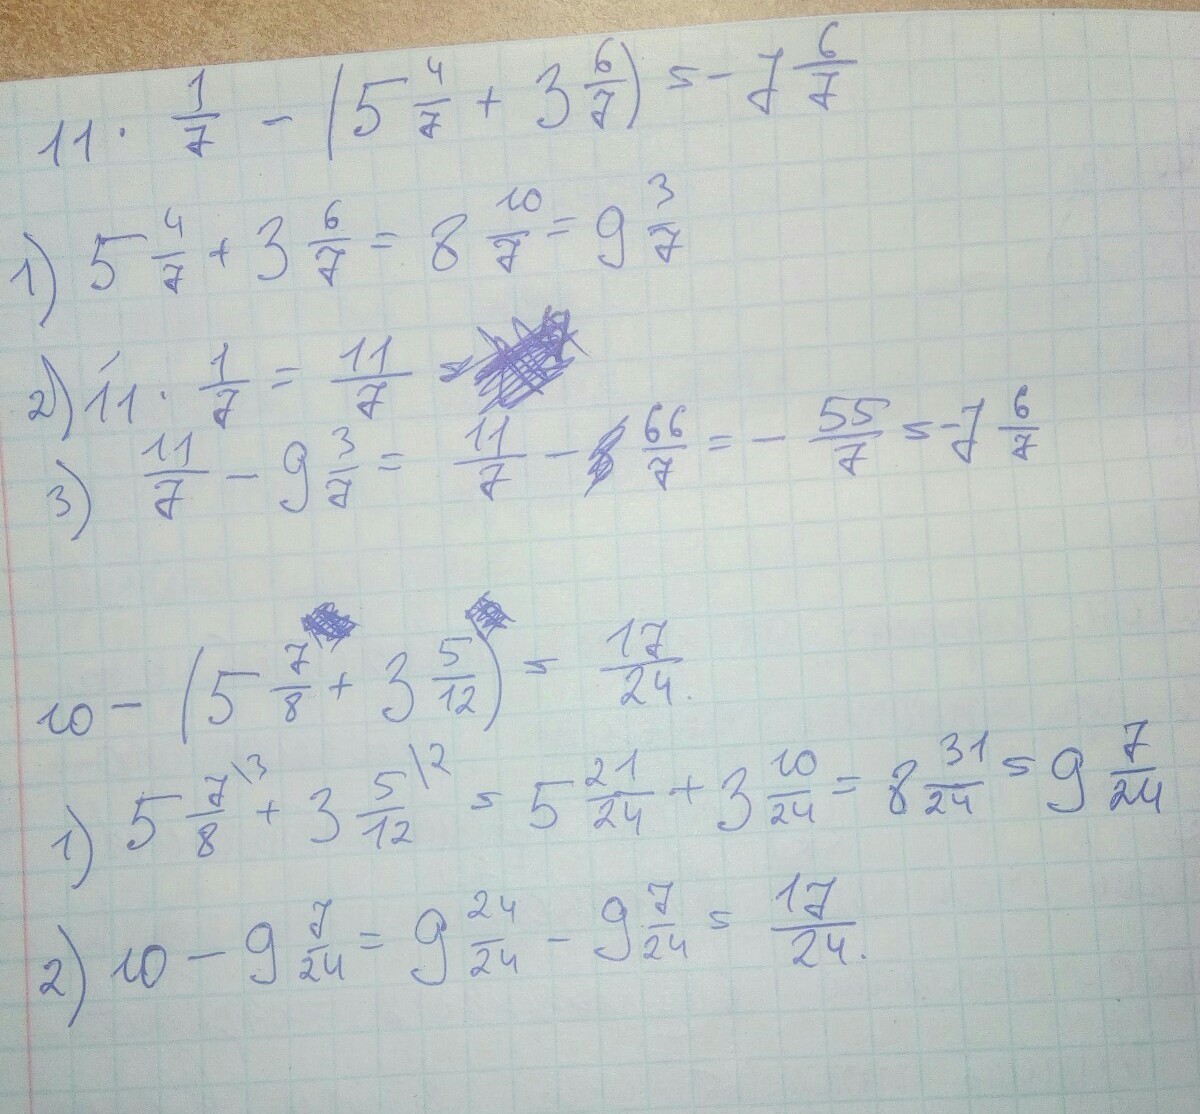 11 3 3 1 7 12. Пример 2 5/6 - (1 1/3-1/2). Решение 1 1/2+1/3*6/11. 1:7 Решение. 2 2/5 И 4 3/7 решение.